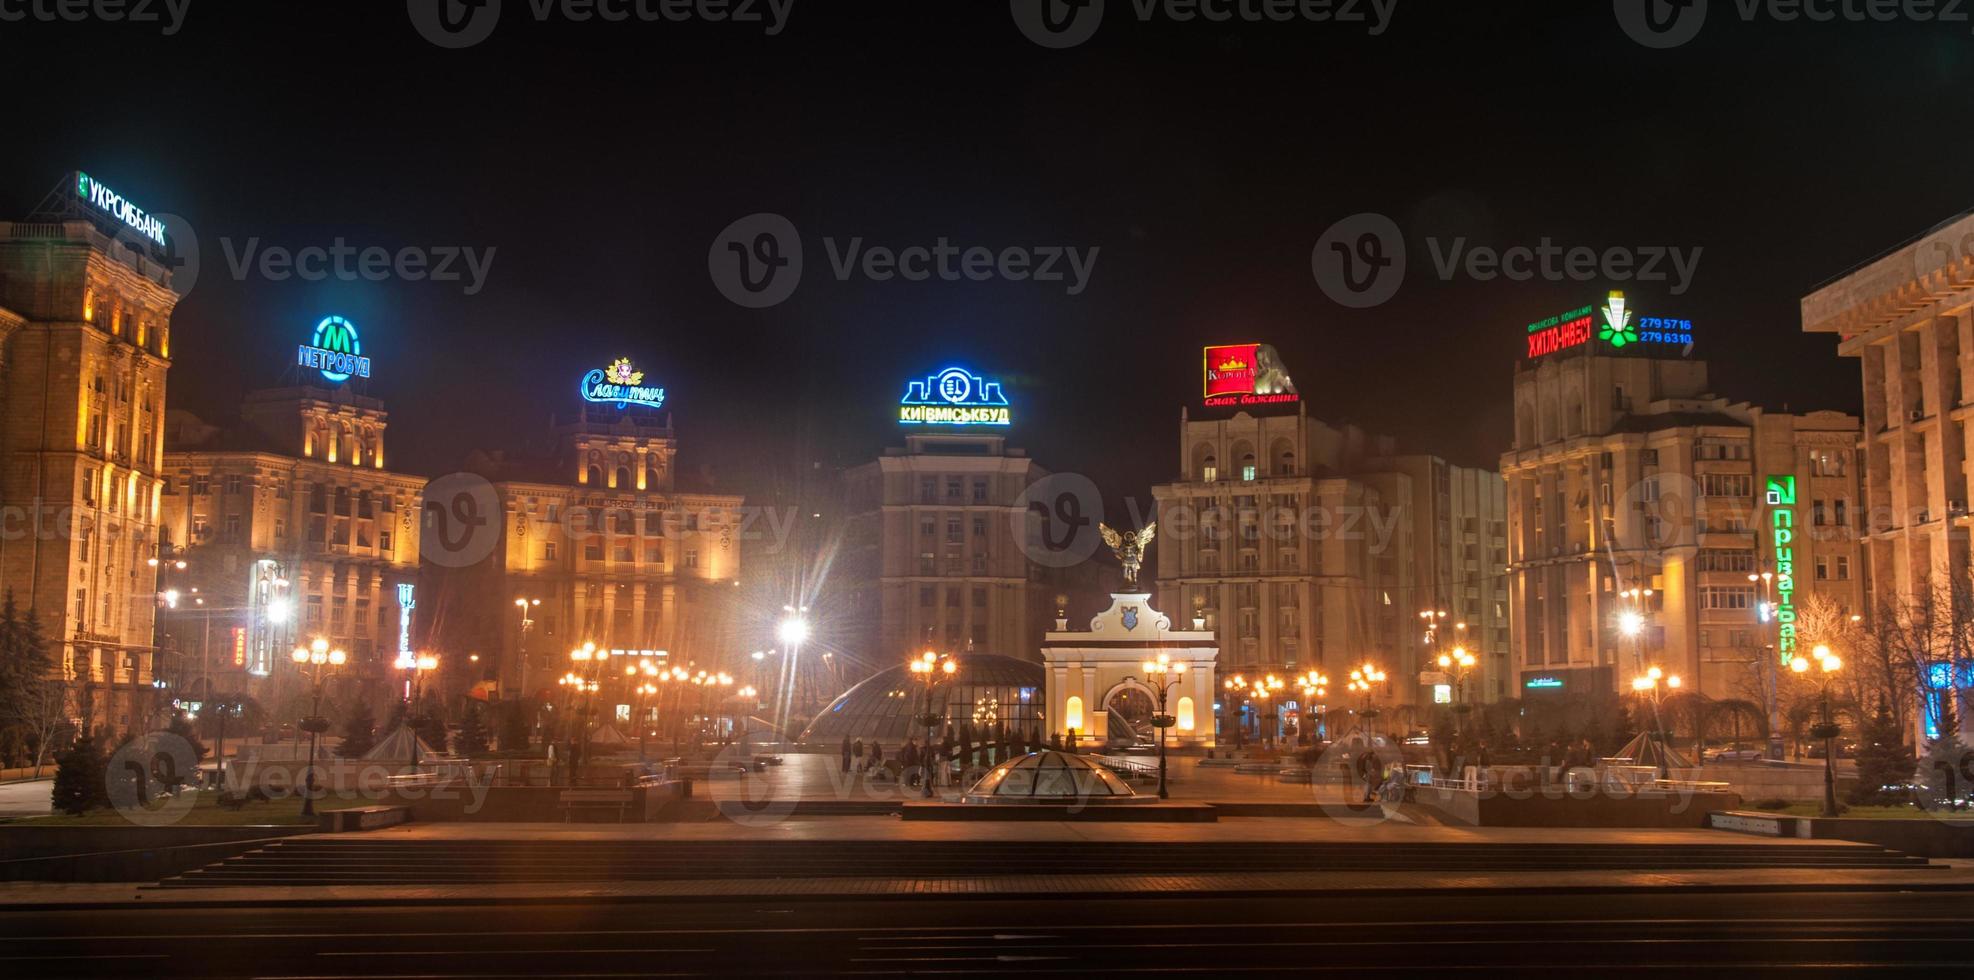 Visualizza di indipendenza quadrato, kiev foto